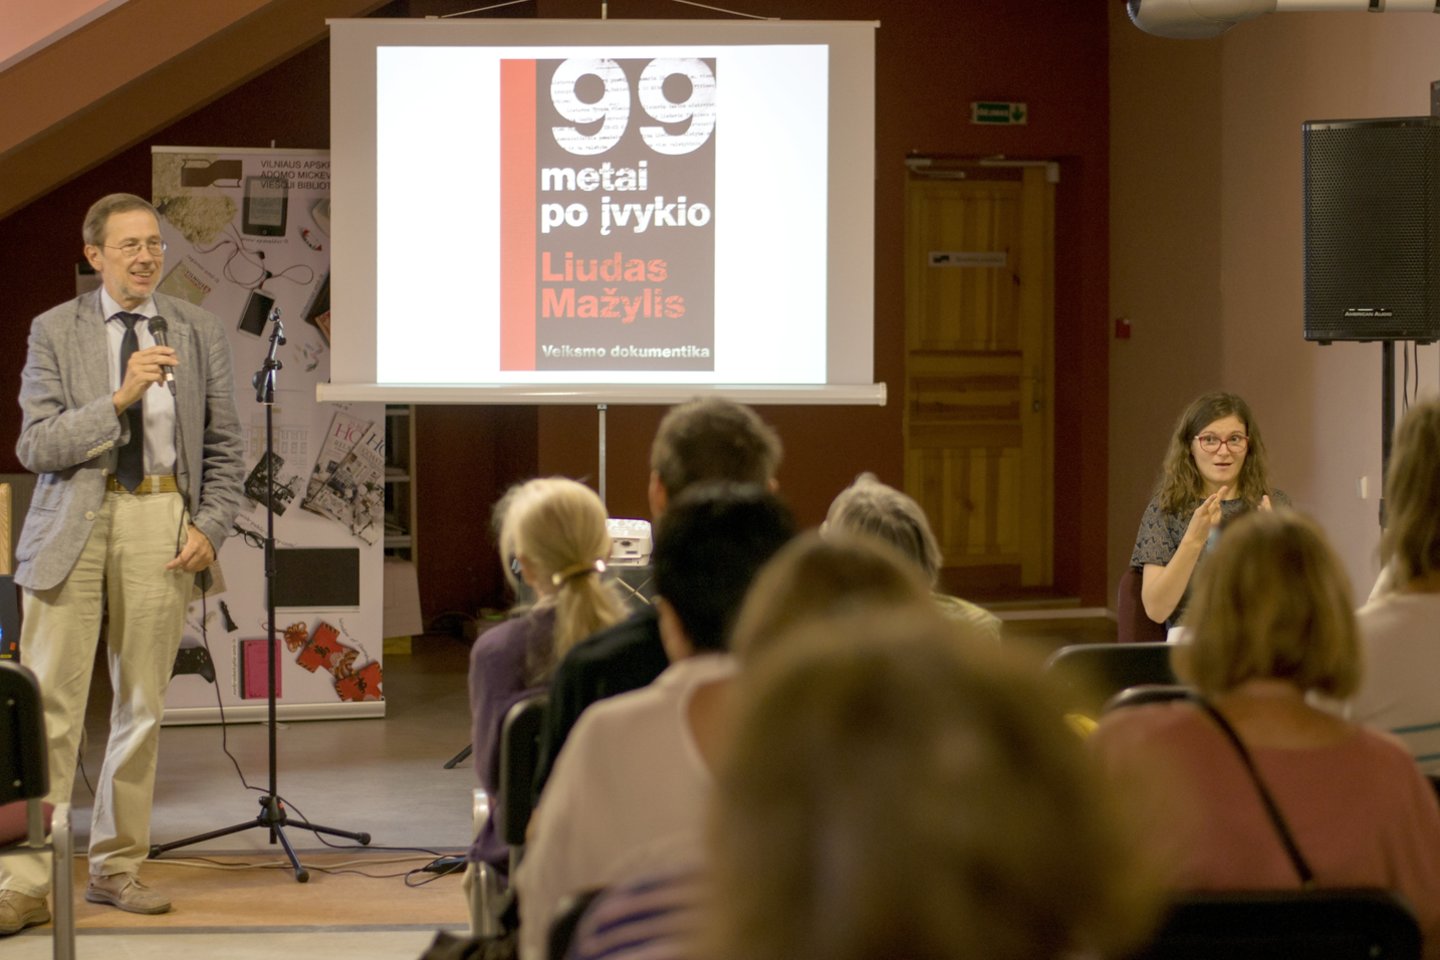  Profesoriaus Liudo Mažylio knygos „99 metai po įvykio“ pristatymas buvo verčiamas į lietuvių gestų kalbą.<br> Nijolės Zenkevičiūtės nuotr.